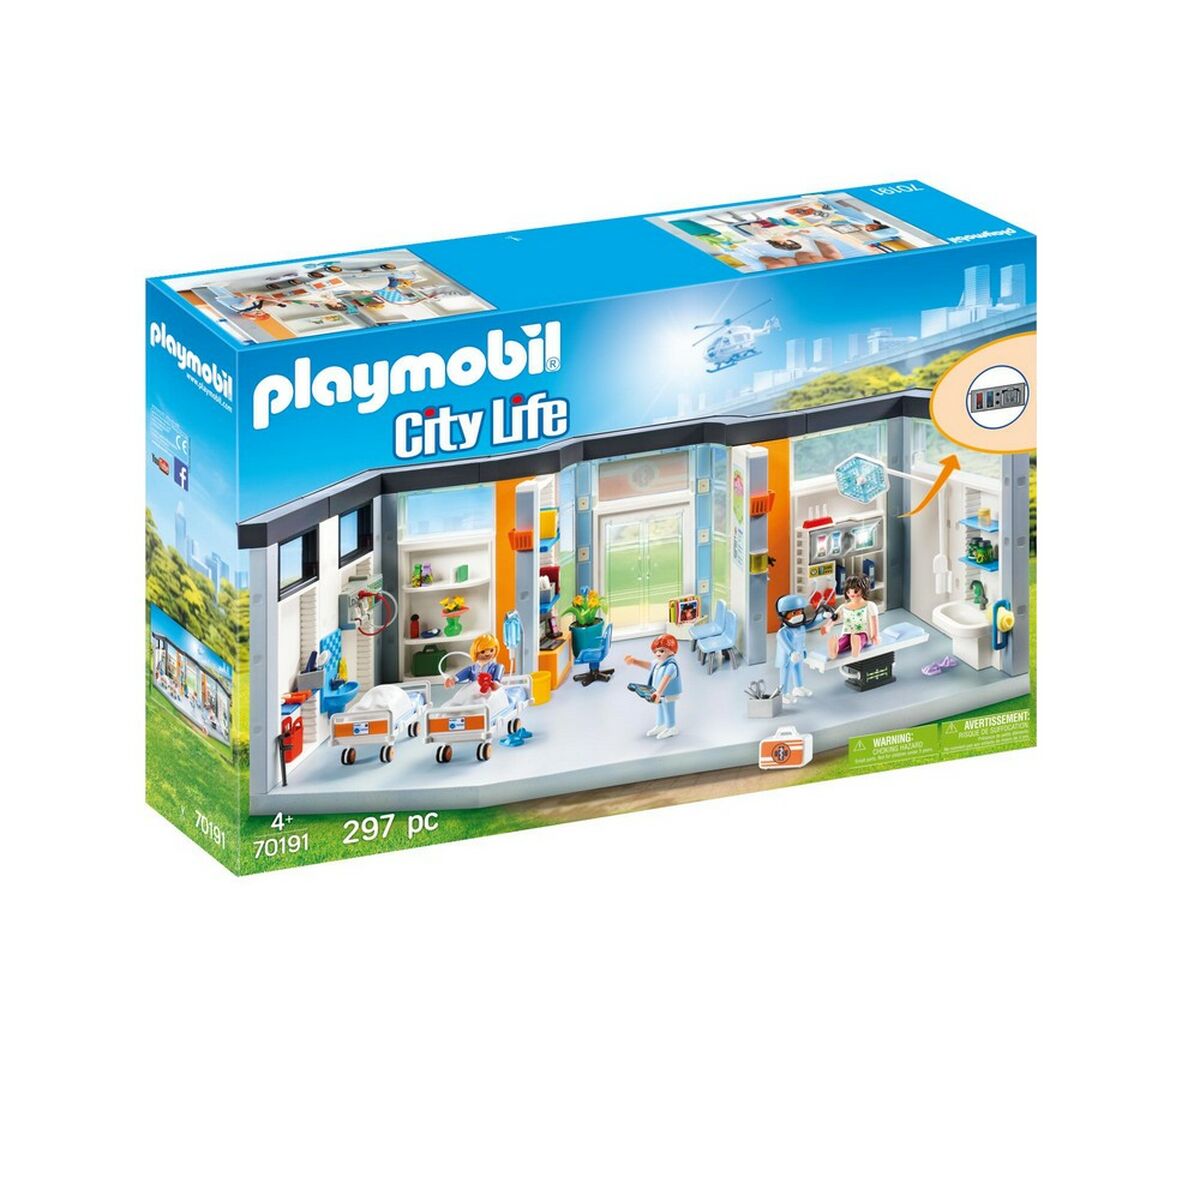 Playset Playmobil City Life Hospital Playmobil 70191 Médecine et santé (297 pcs)